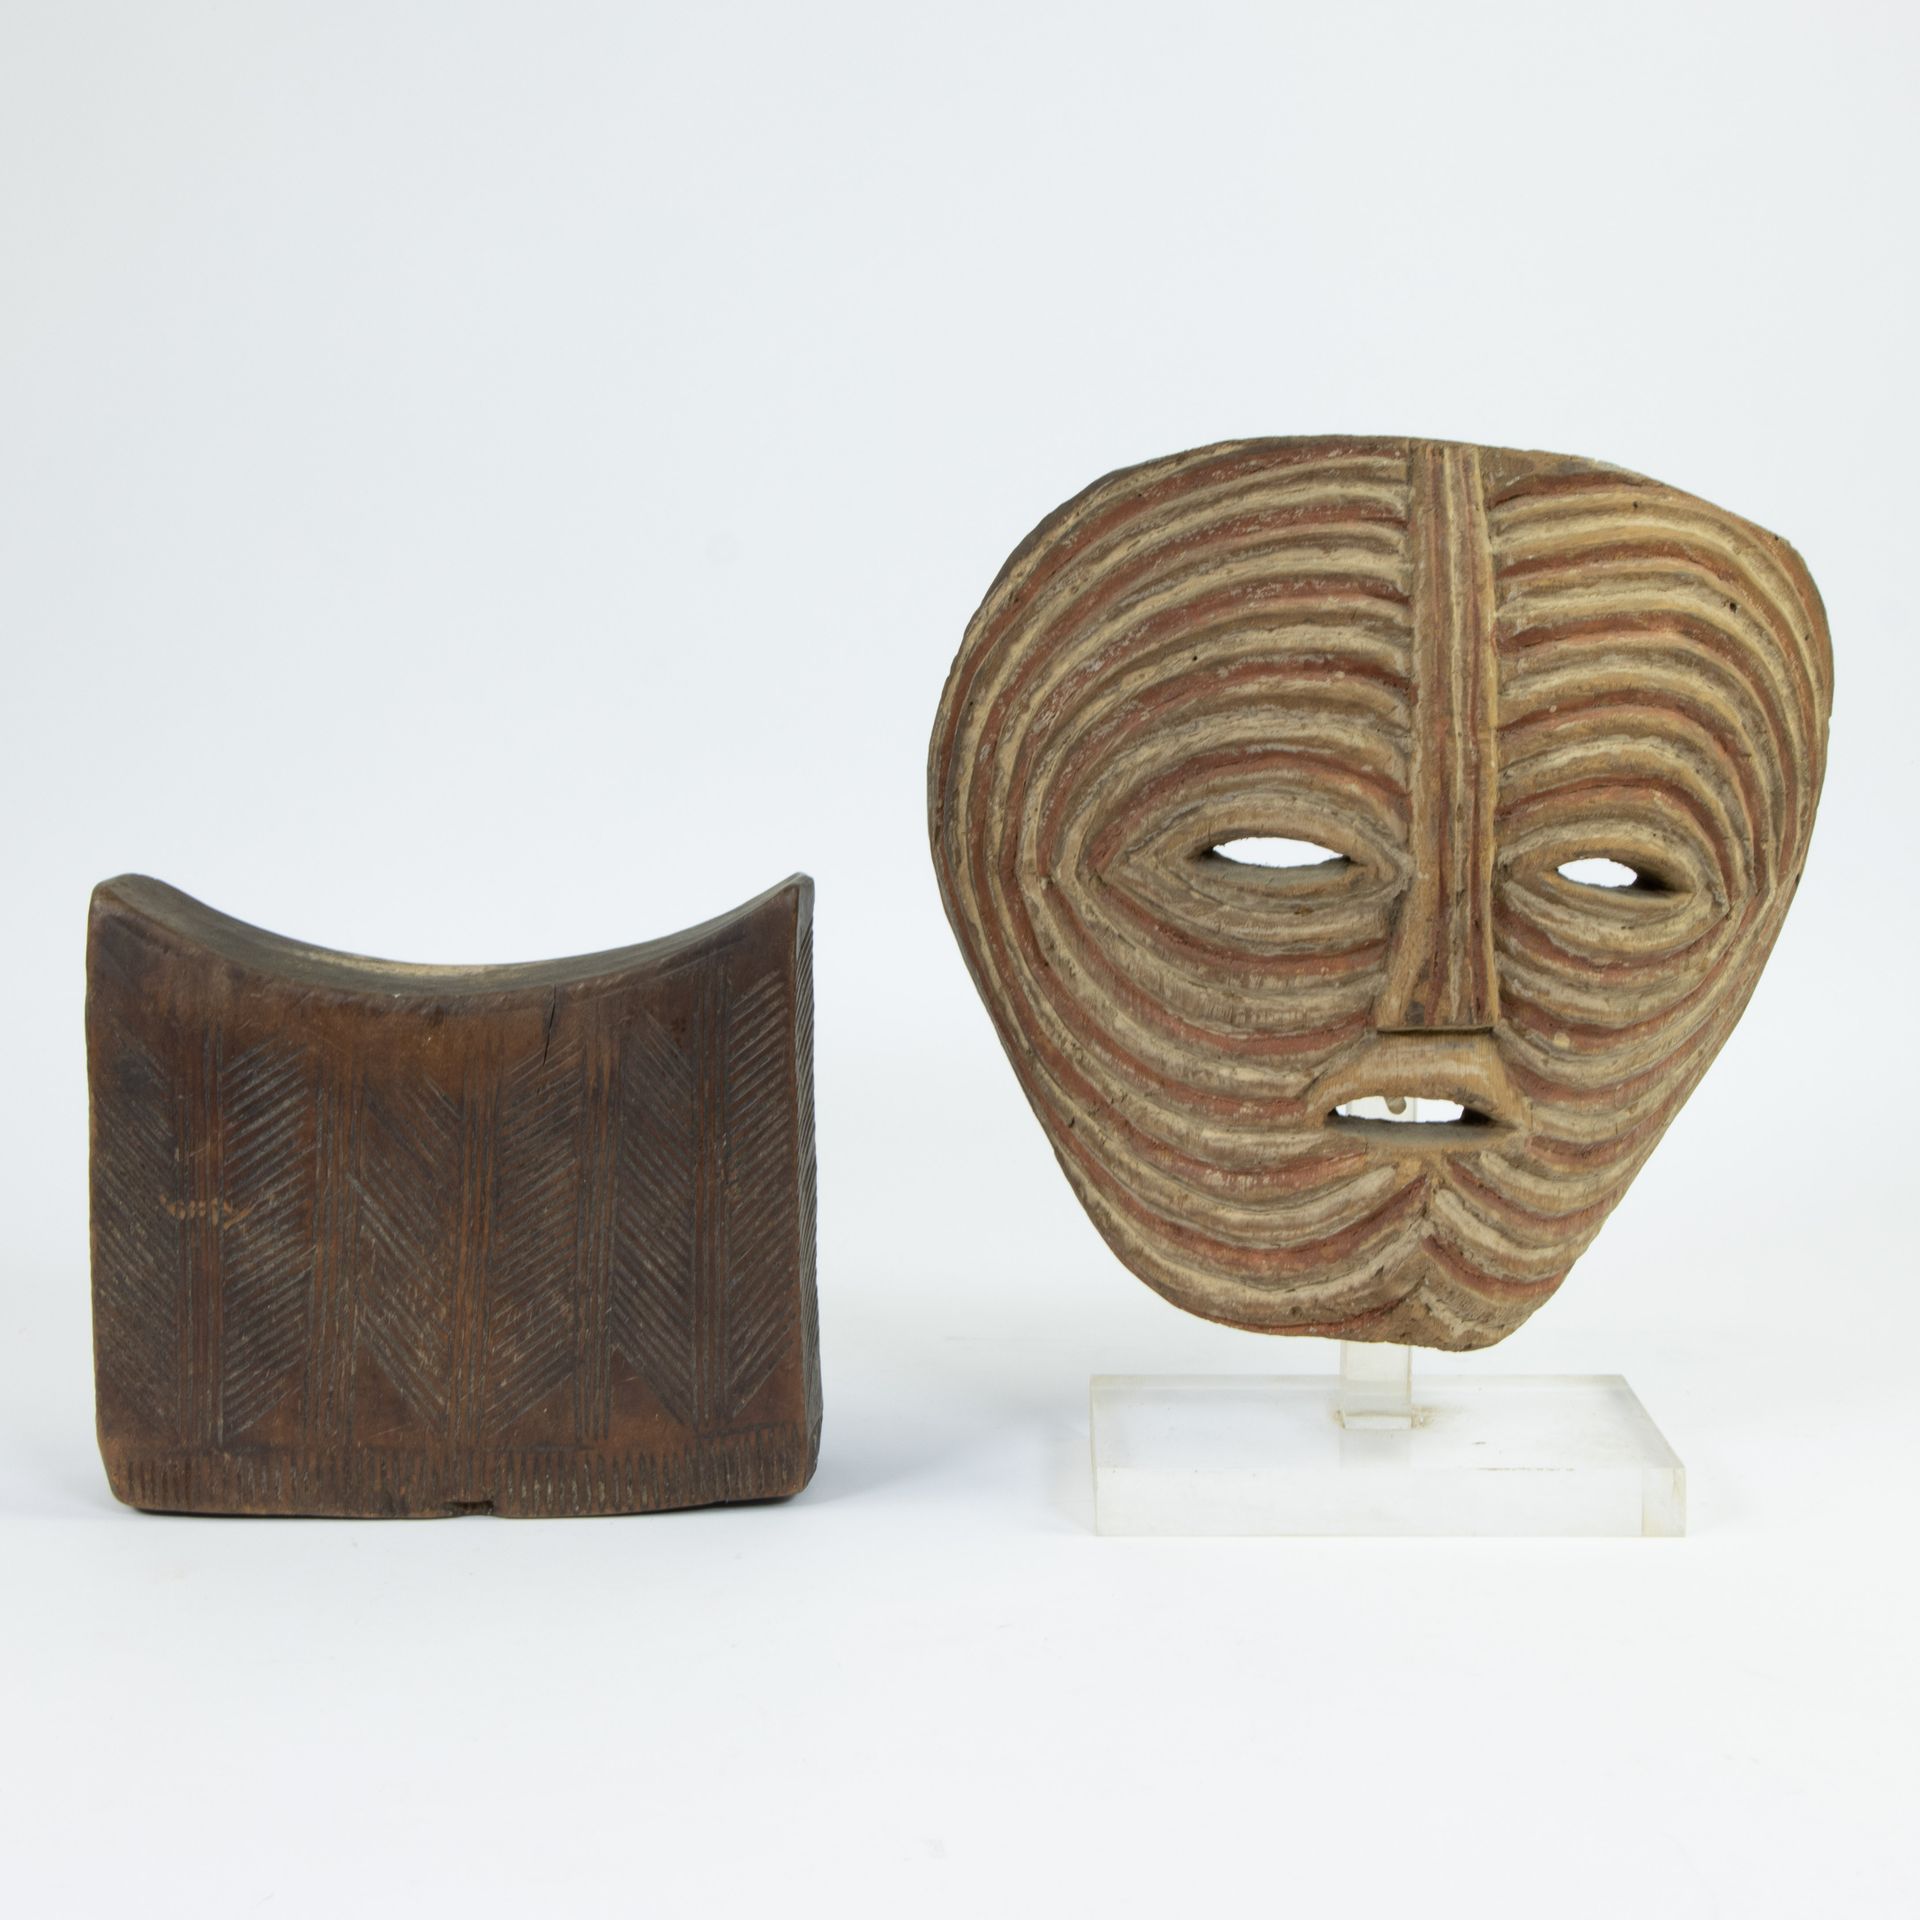 Null African mask and a neck rest
Afrikaans masker en neksteun
18 x 20.5 x 8 & 2&hellip;